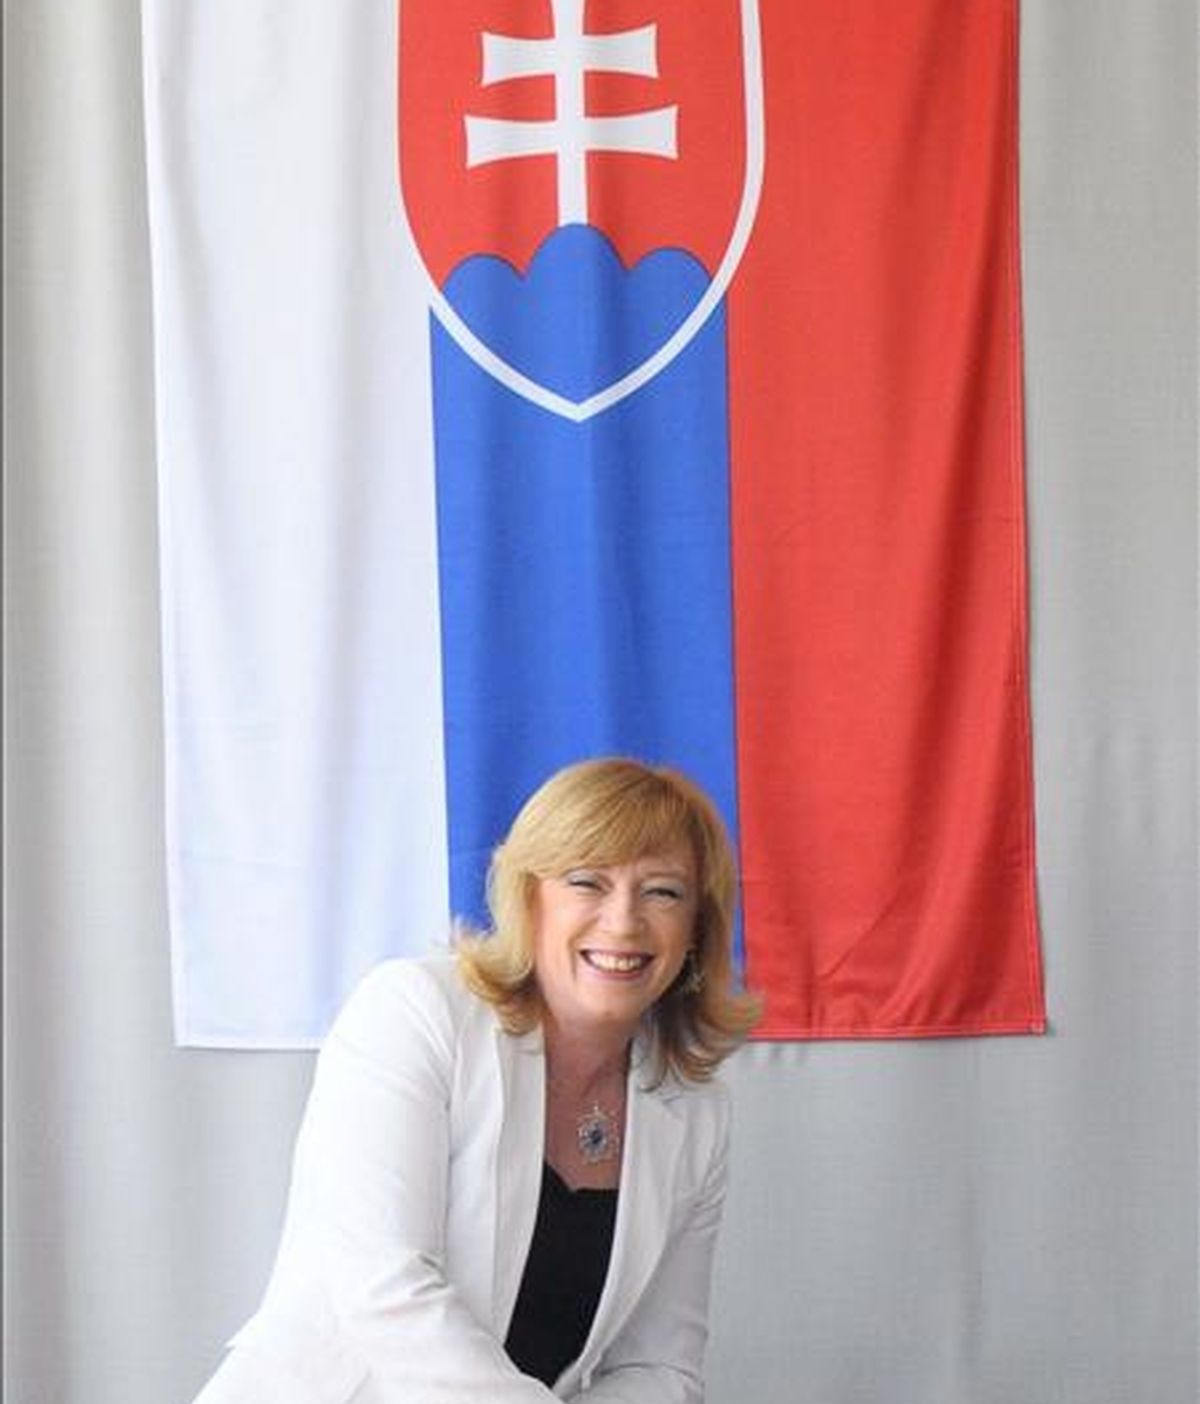 La candidata presidencial Iveta Radicova, deposita hoy su voto en un colegio electoral de Nova Dedinka (Eslovaquia), durante la segunda vuelta de las elecciones presidenciales eslovacas. EFE